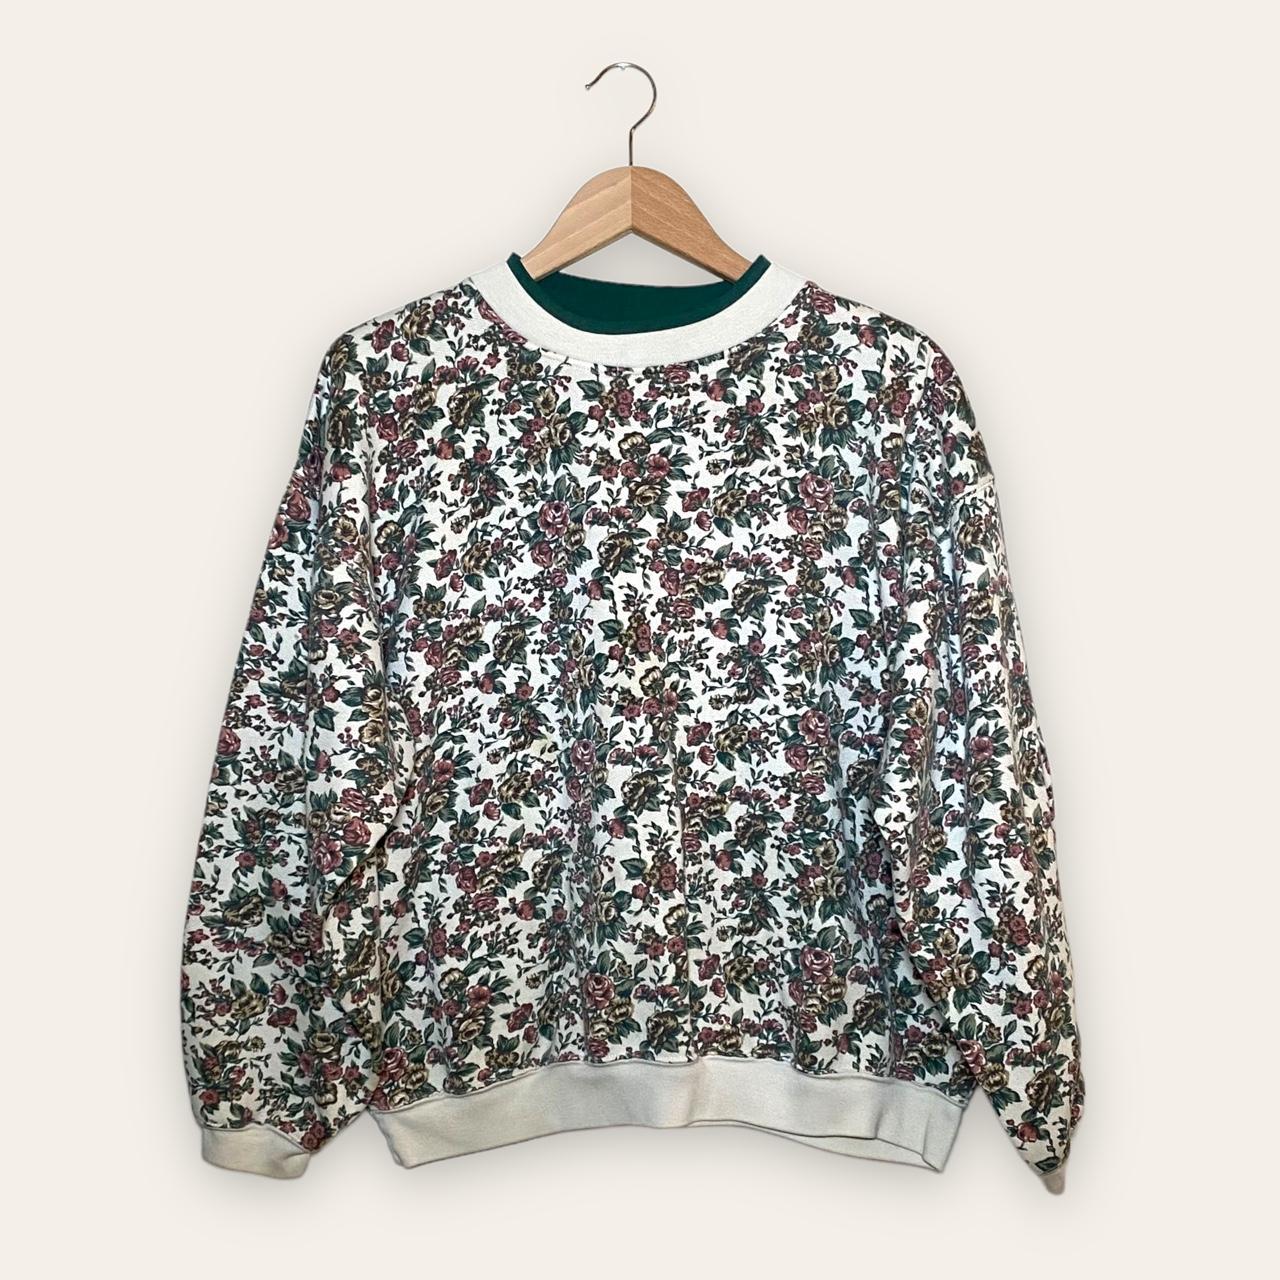 Product Image 1 - vintage floral sweatshirt crewneck grandma